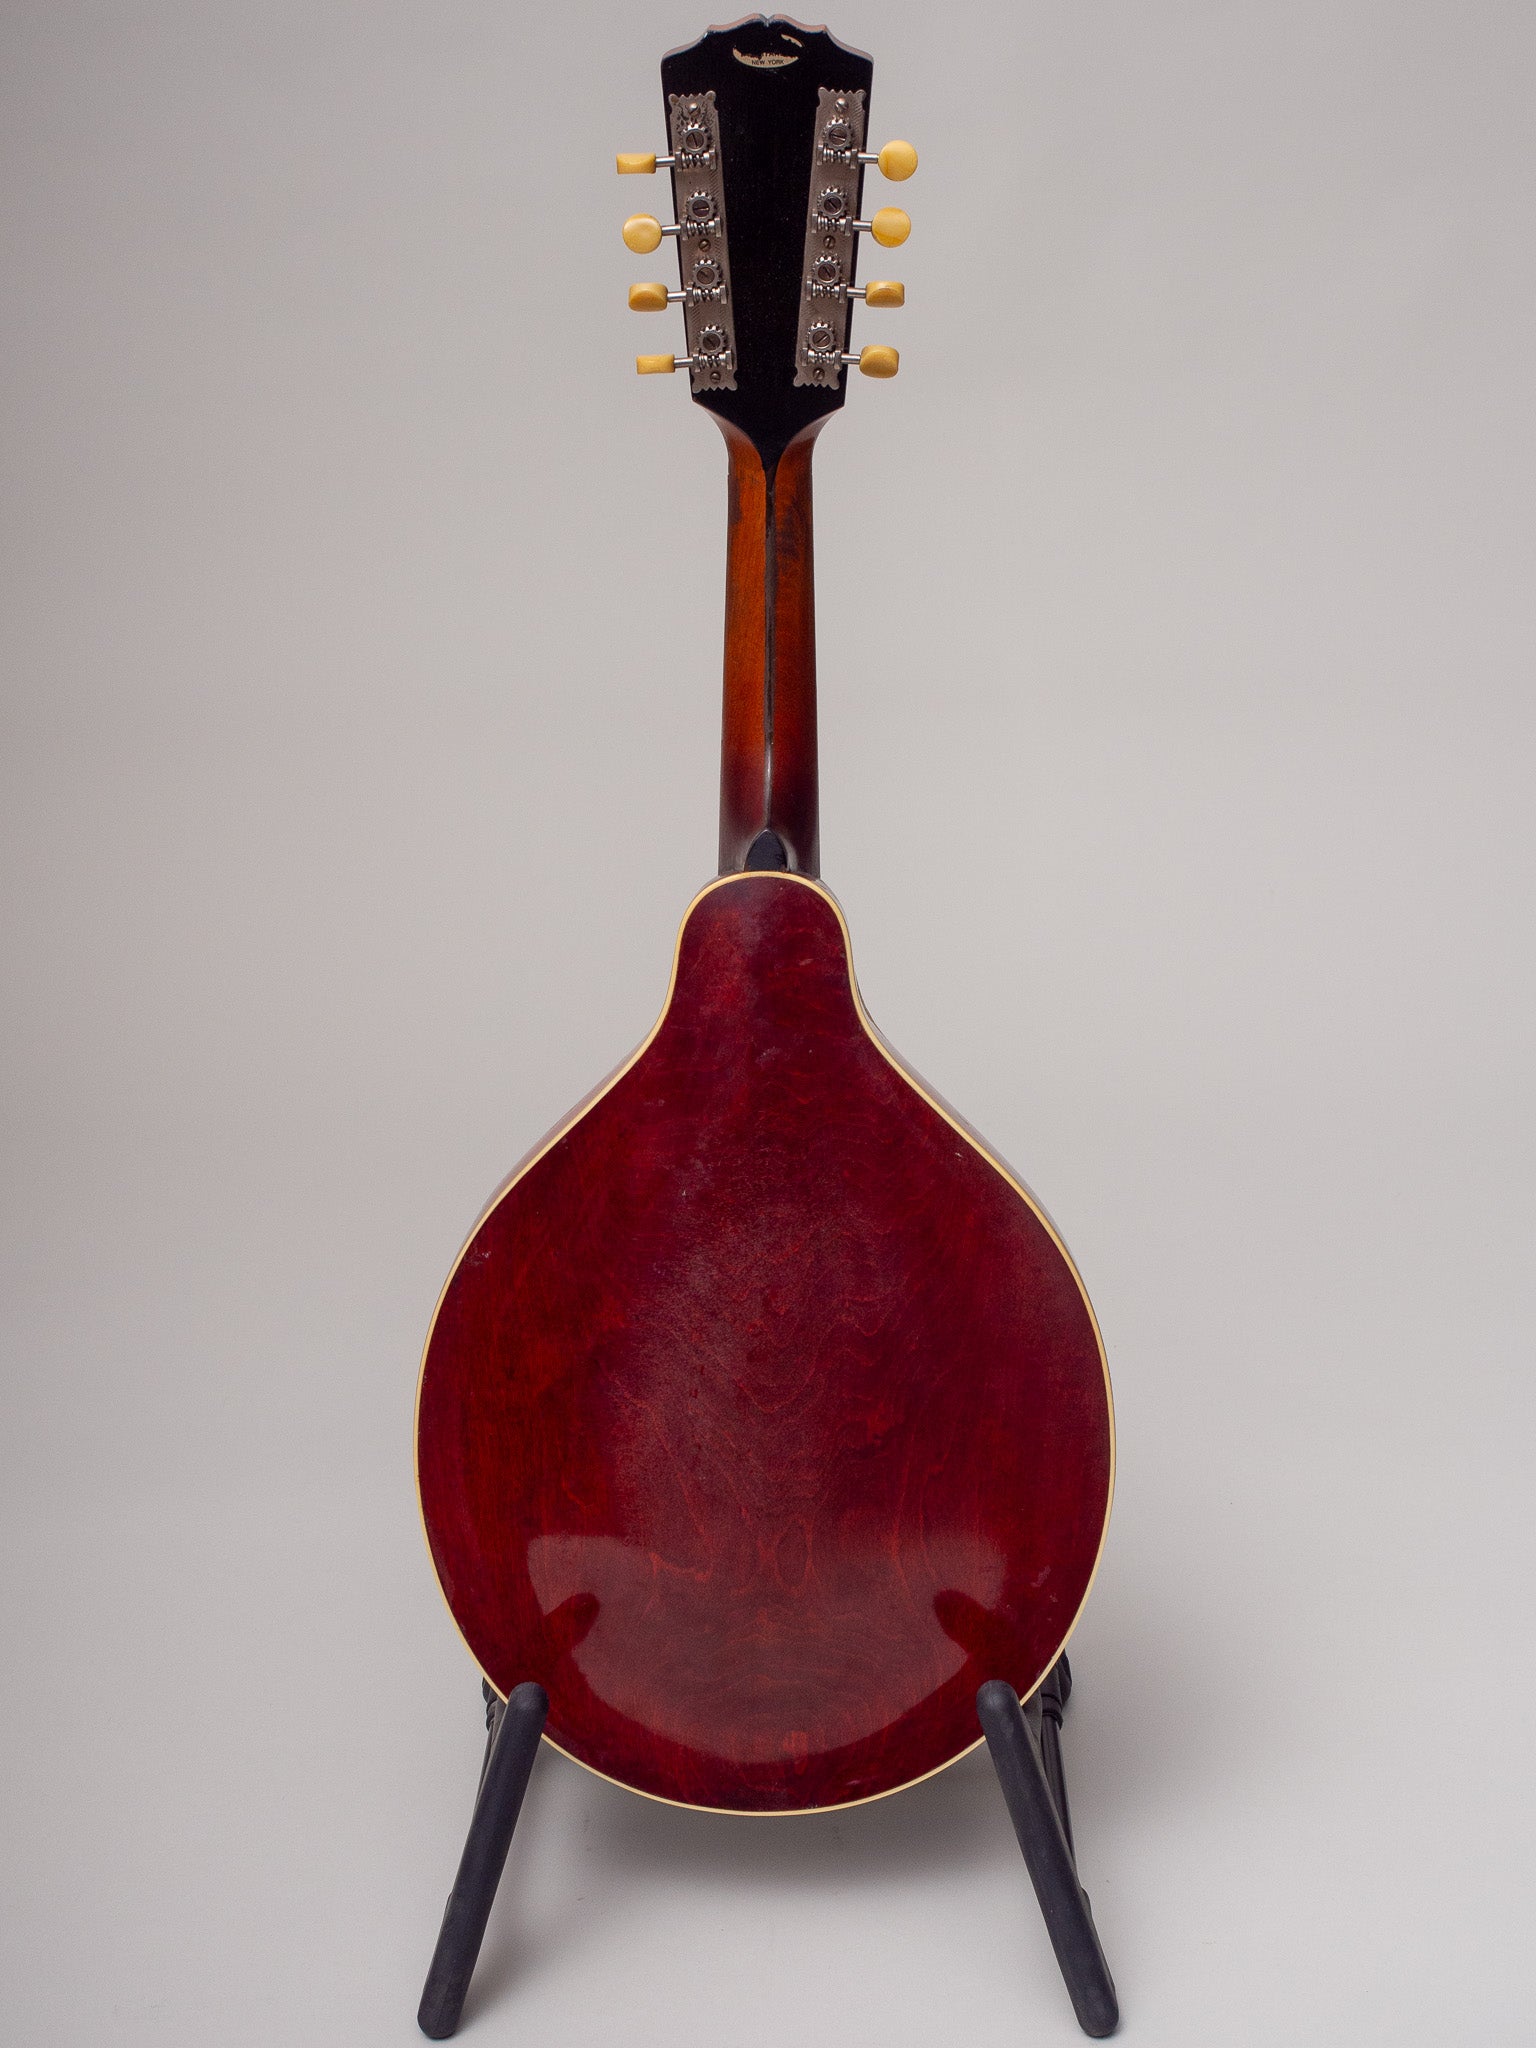 1918 Gibson A4